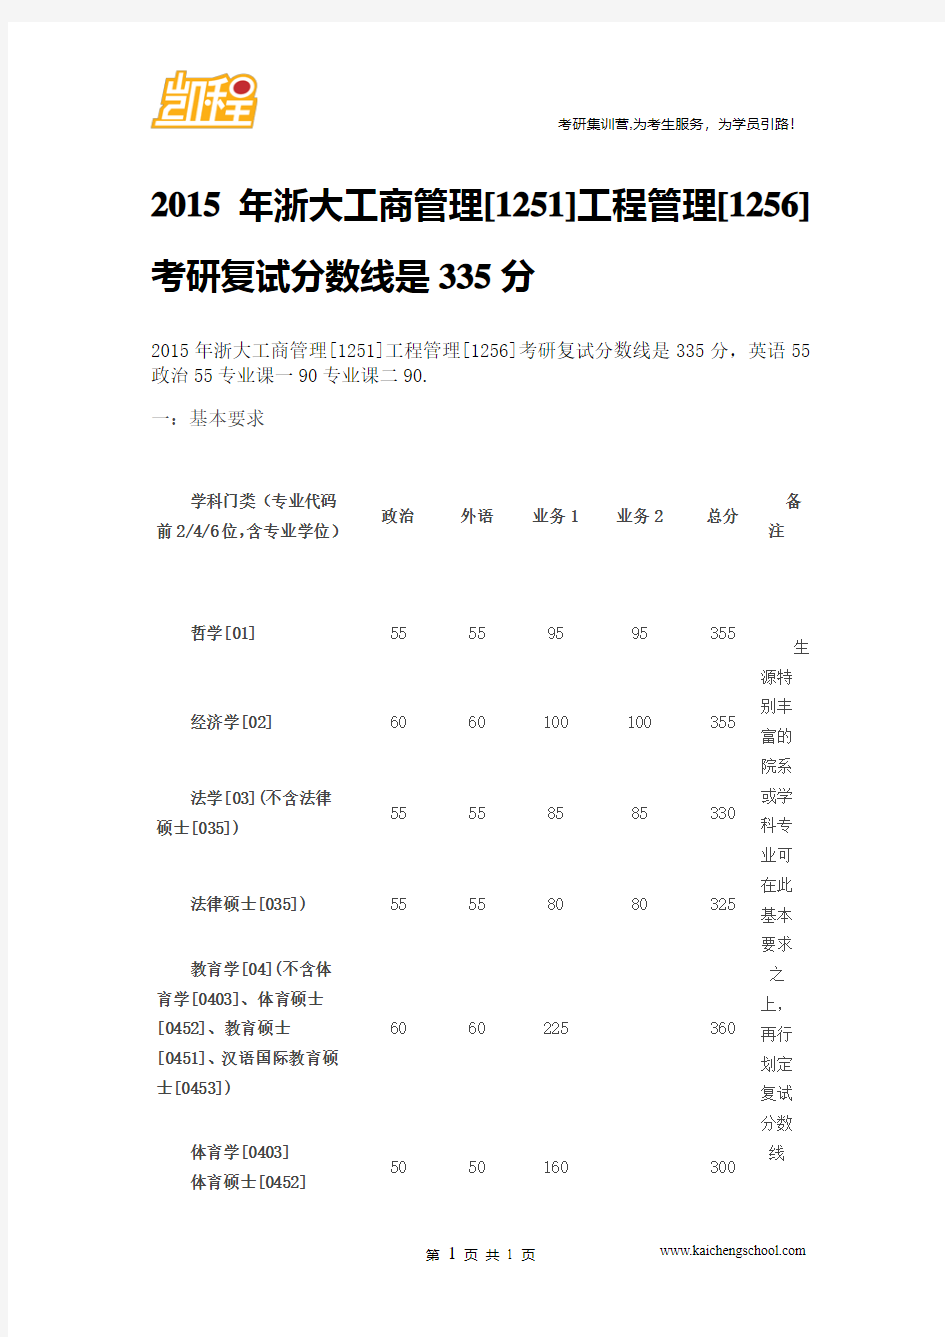 2015年浙大工商管理[1251]工程管理[1256]考研复试分数线是335分